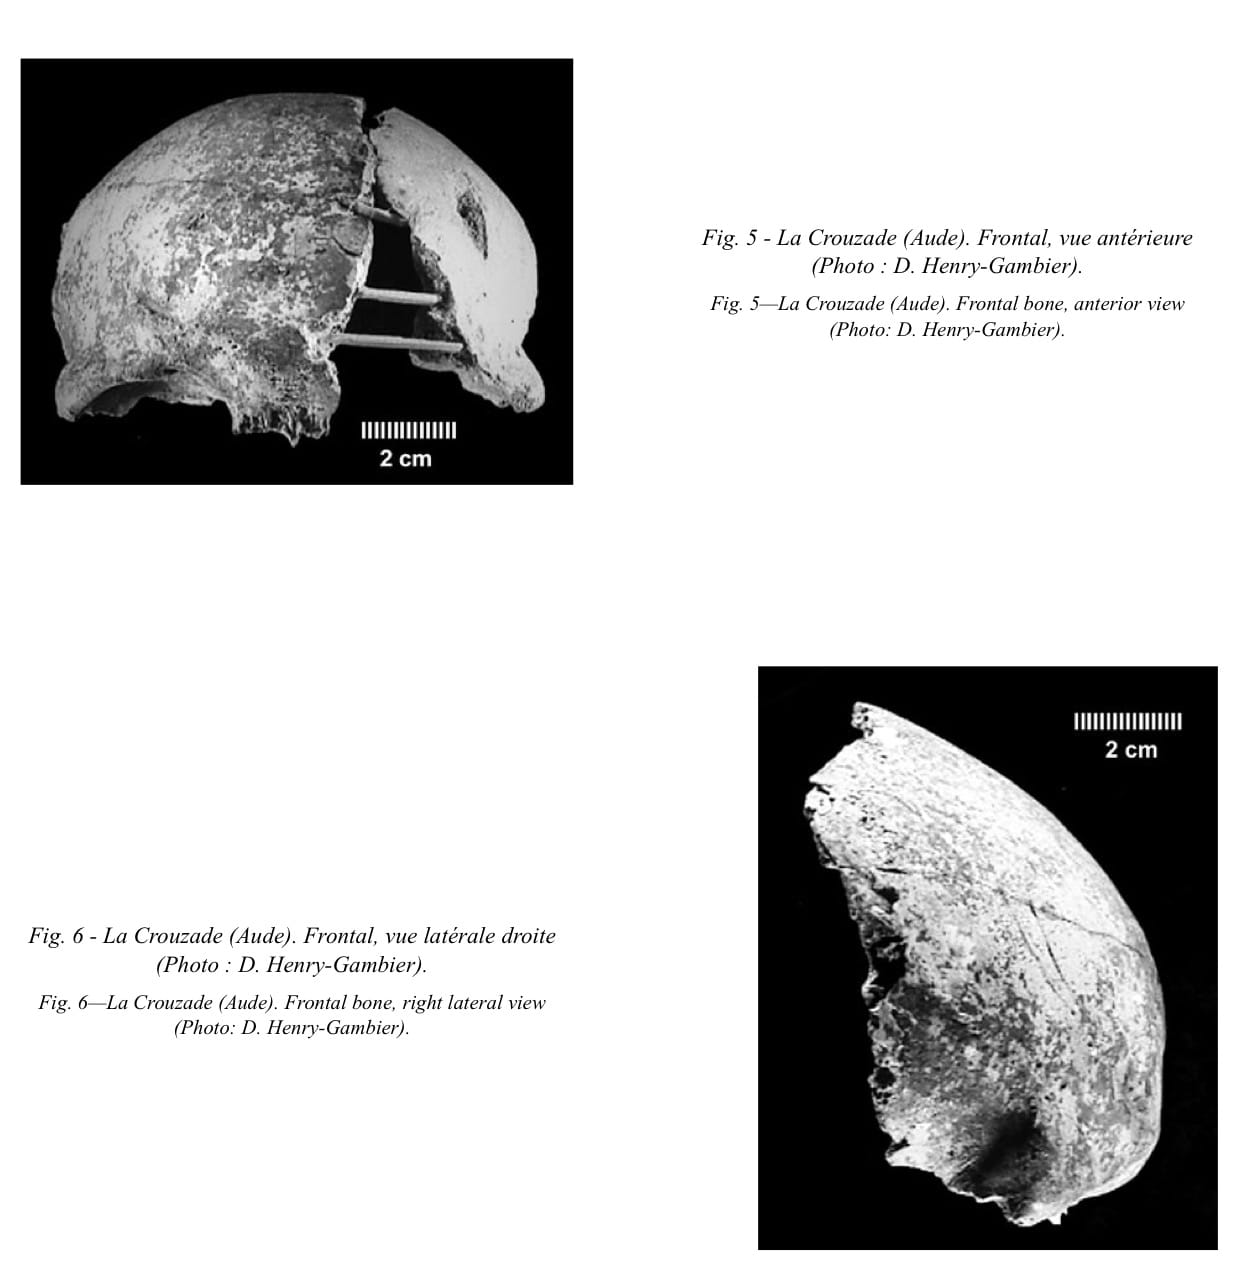 Aurignacien: Frontal et fragment du maxillaire